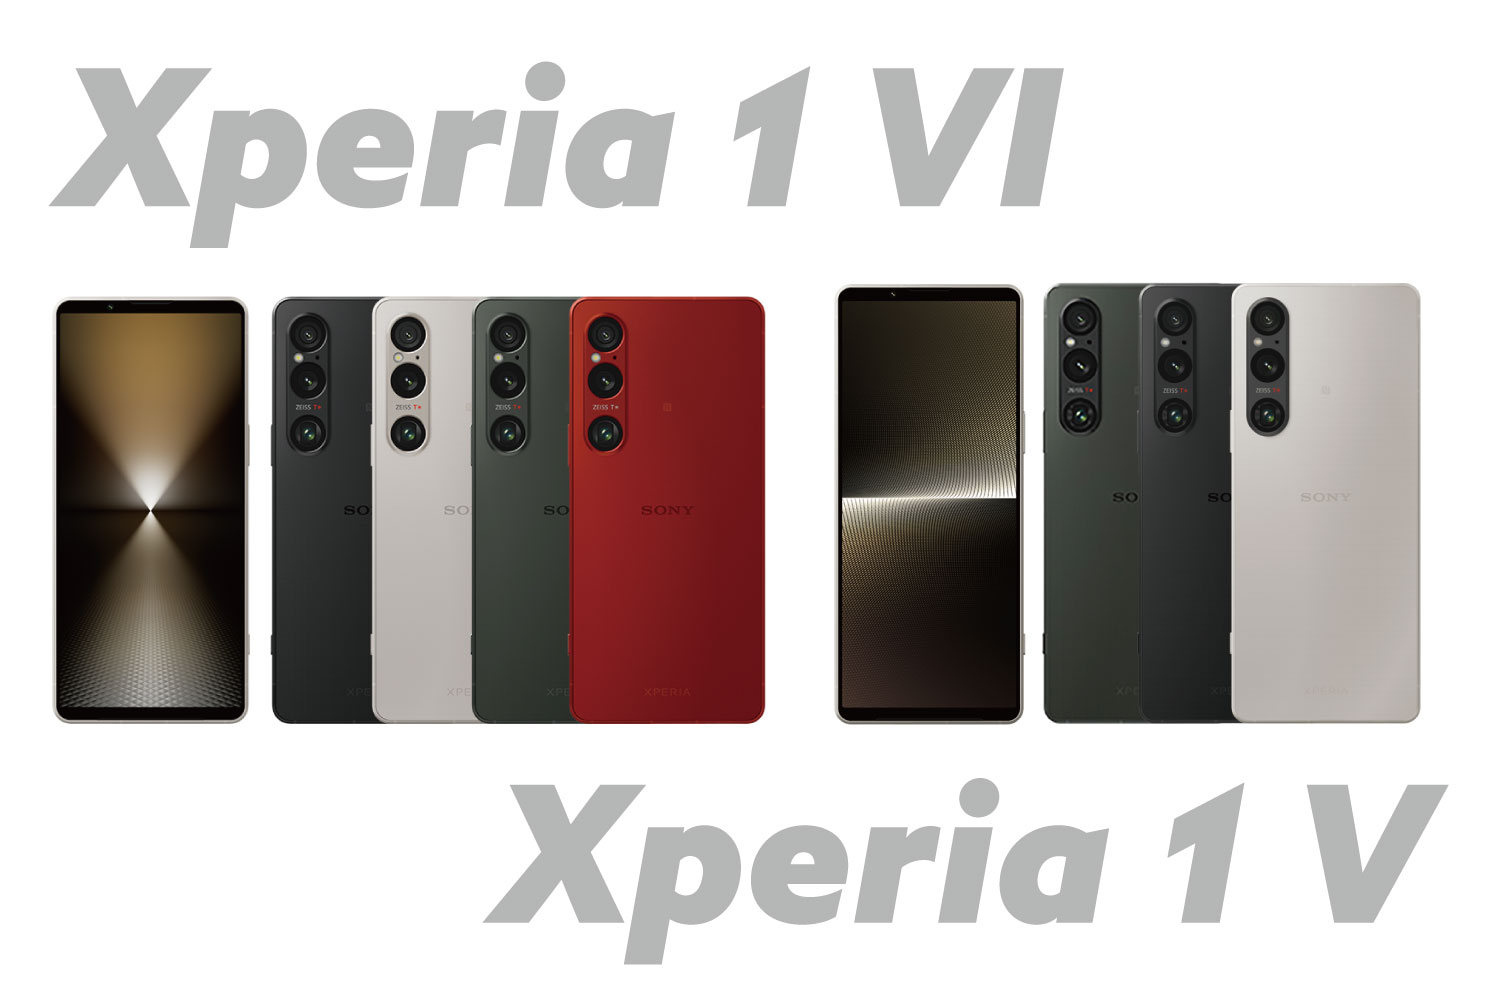 Xperia 1 VI vs Xperia 1 V